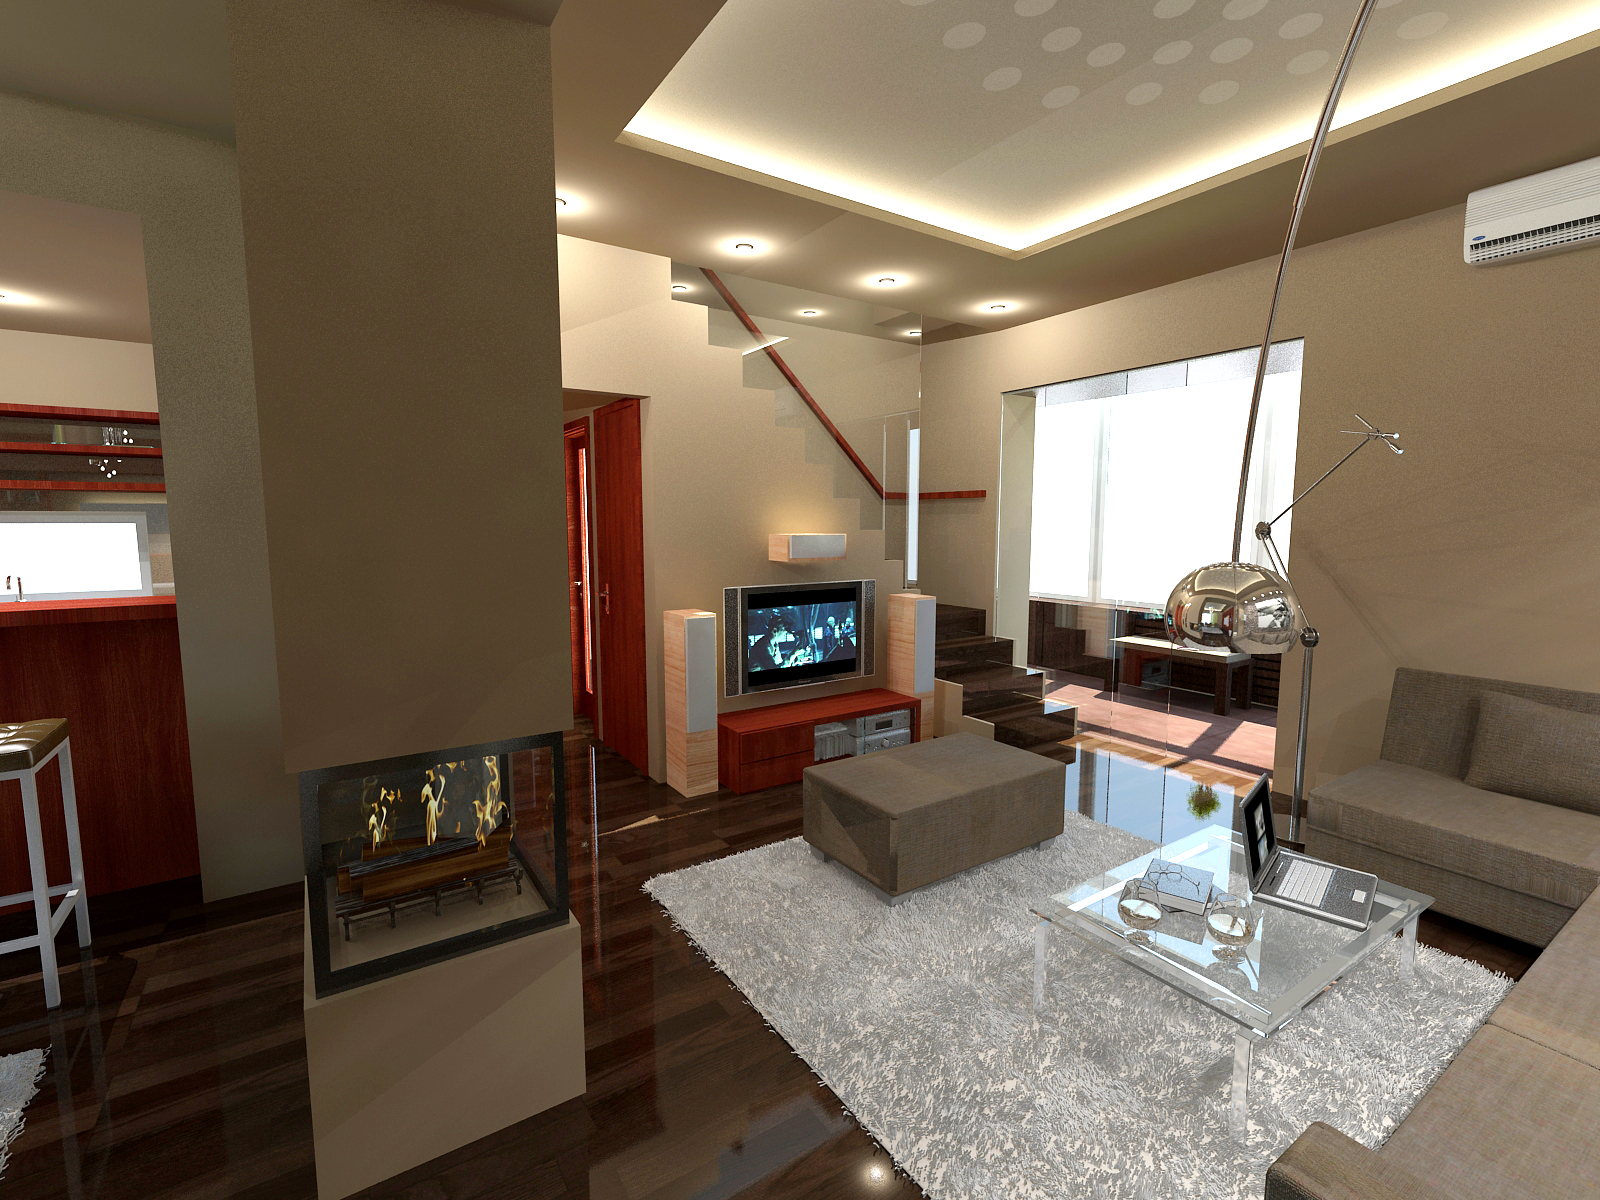 Nappali látványterv / Living room - architectural visualisation